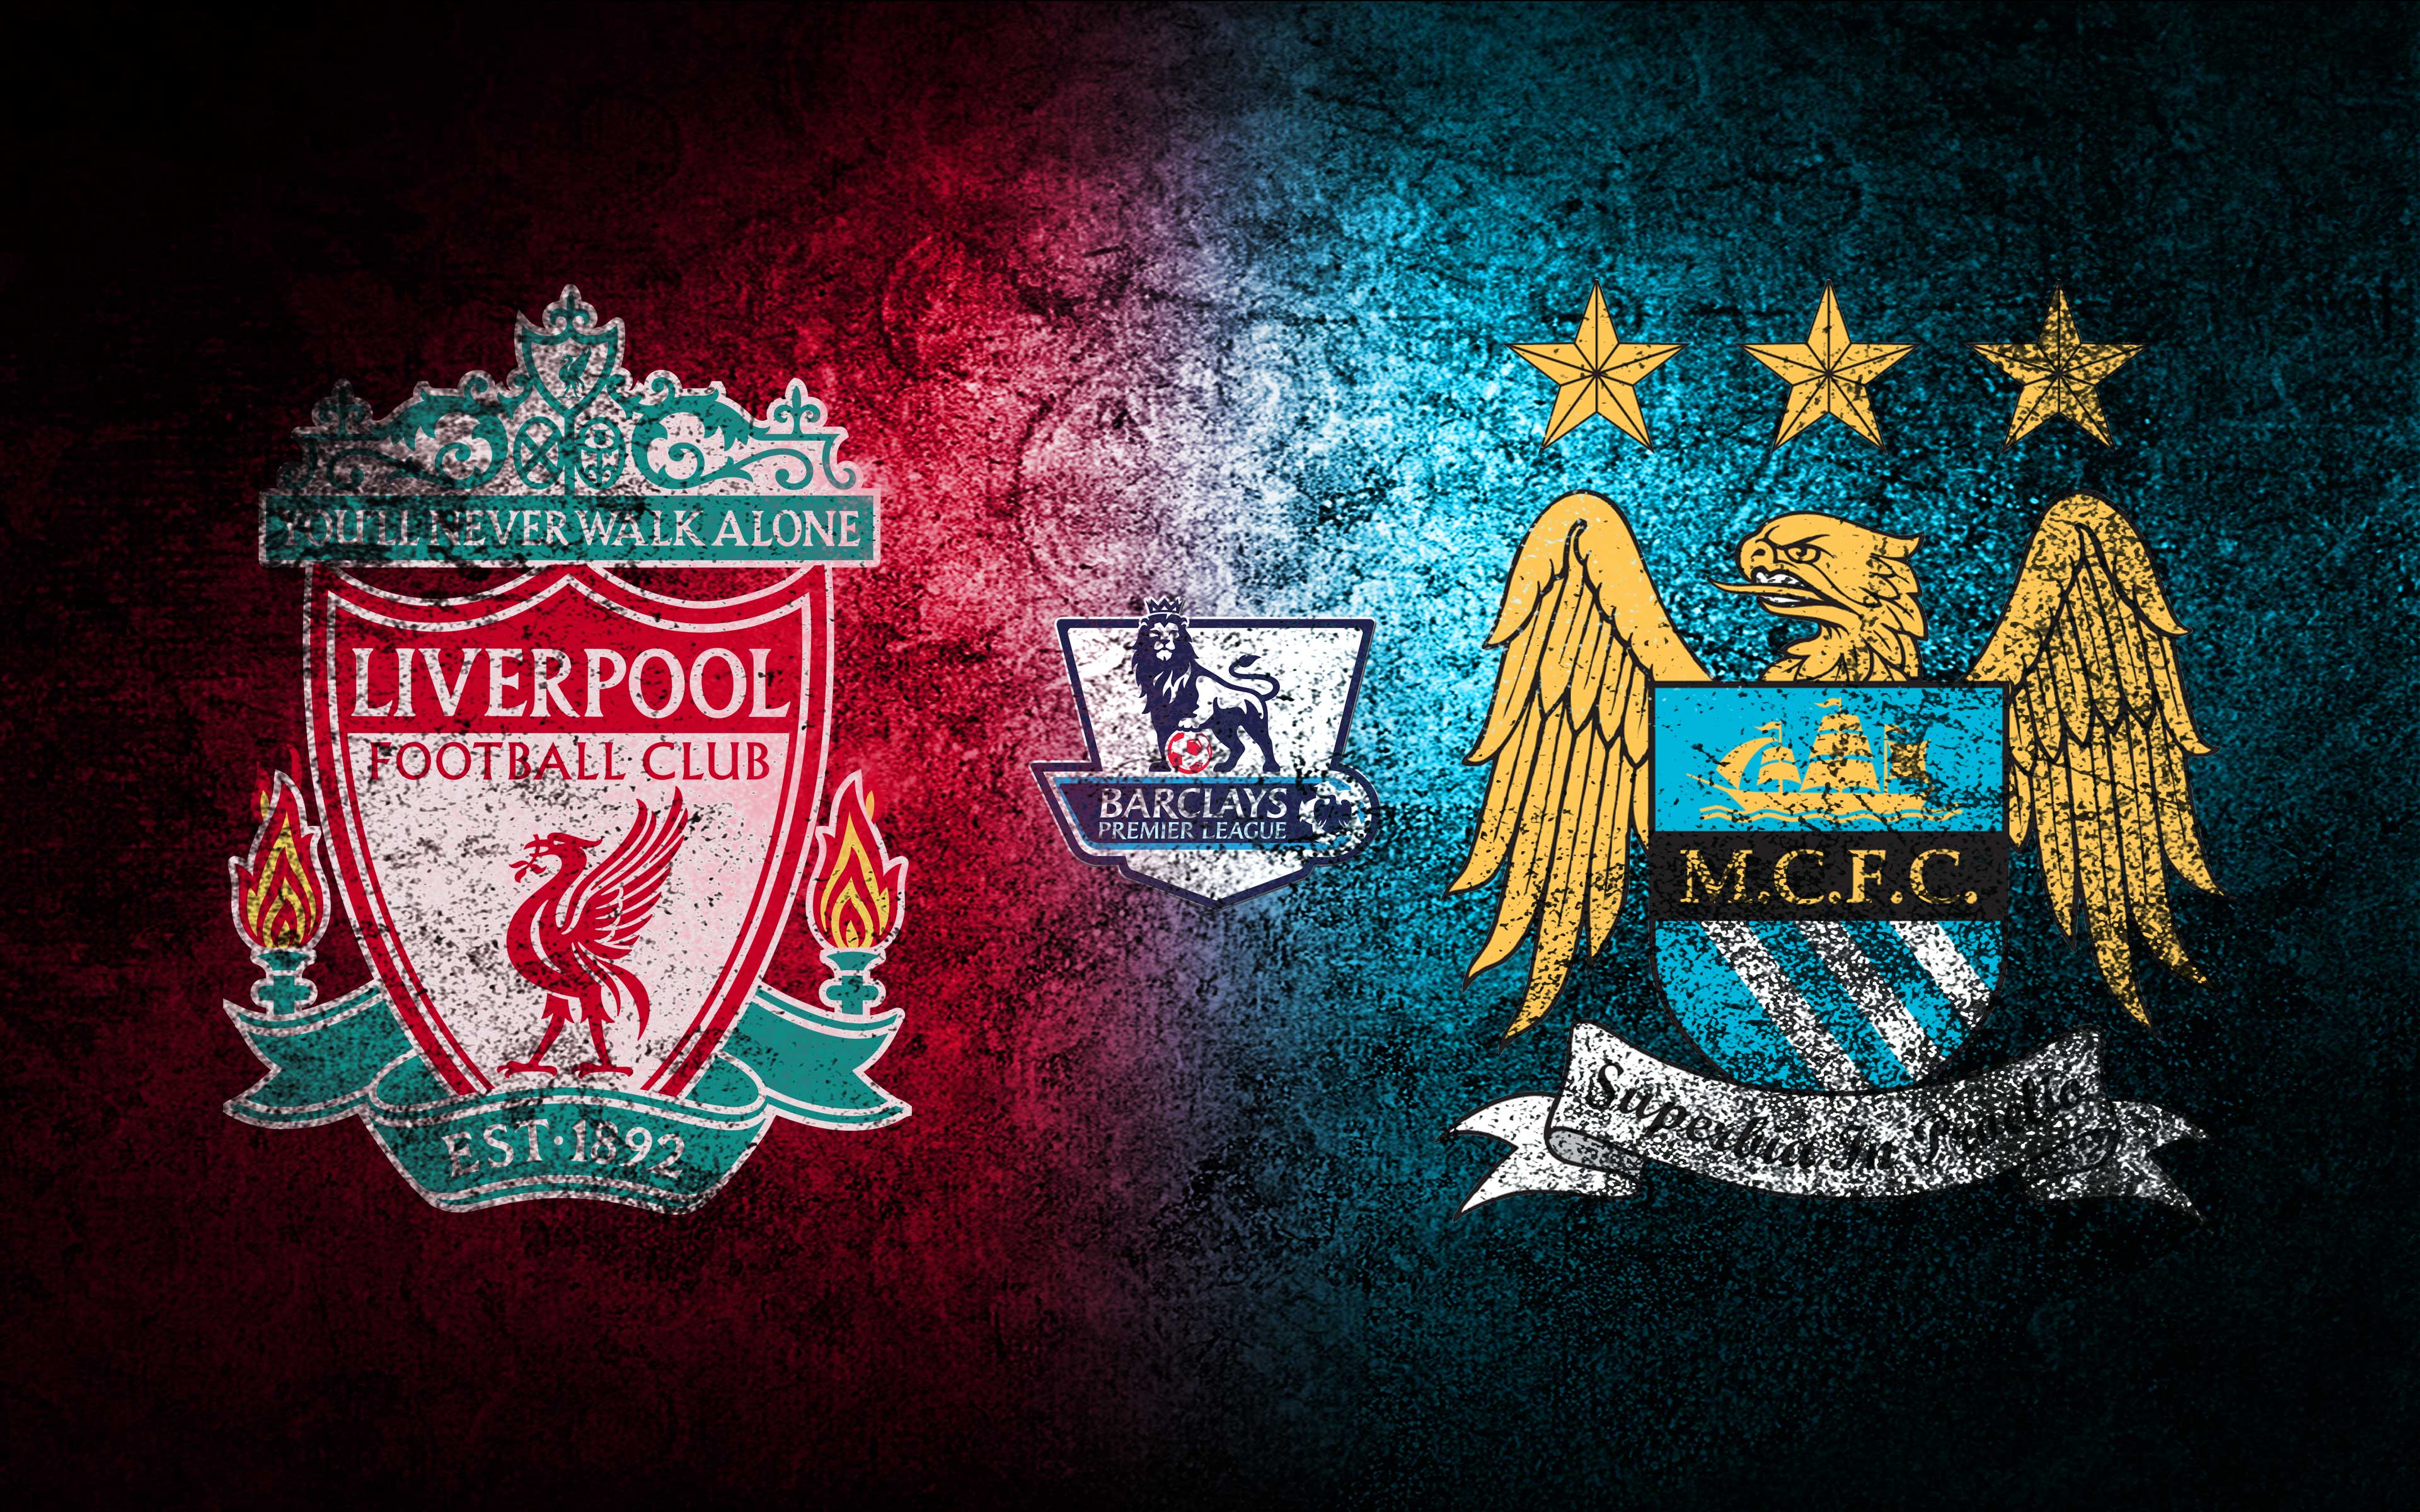 Liverpool-FC-vs-Manchester-City-FC-2014-Premier-League-Wallpaper